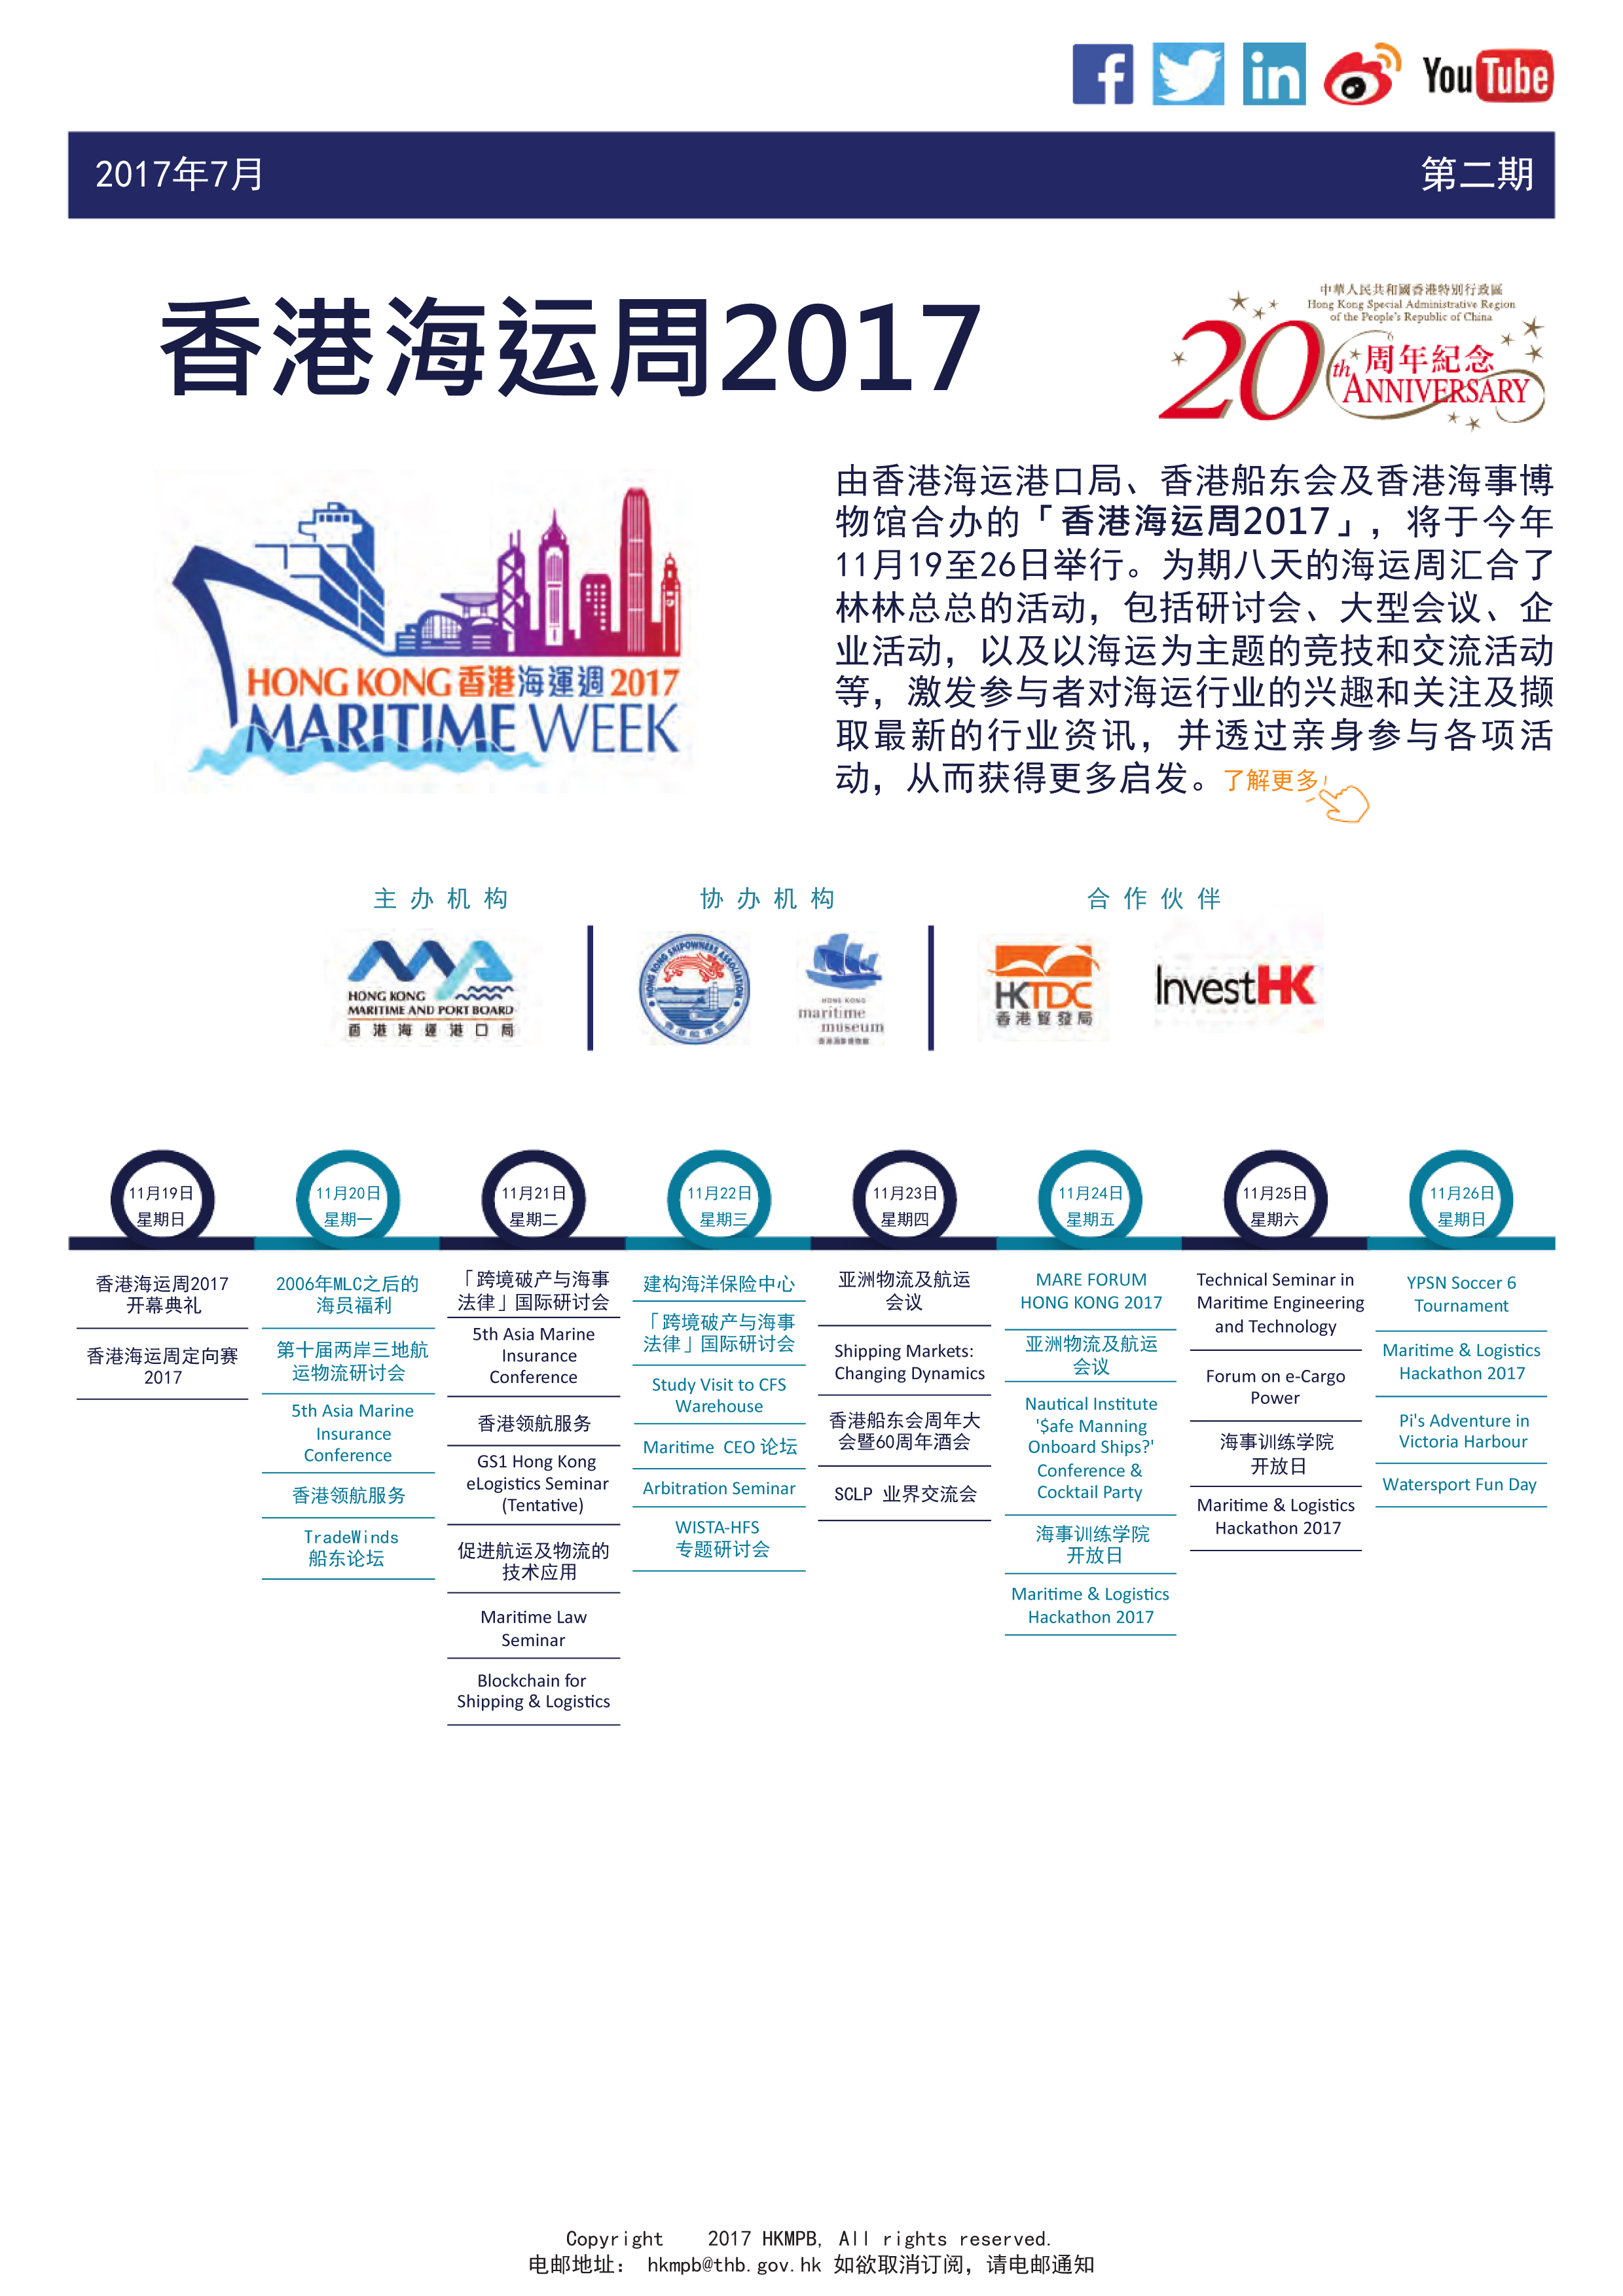 香港海運周2017 電子簡報第2期